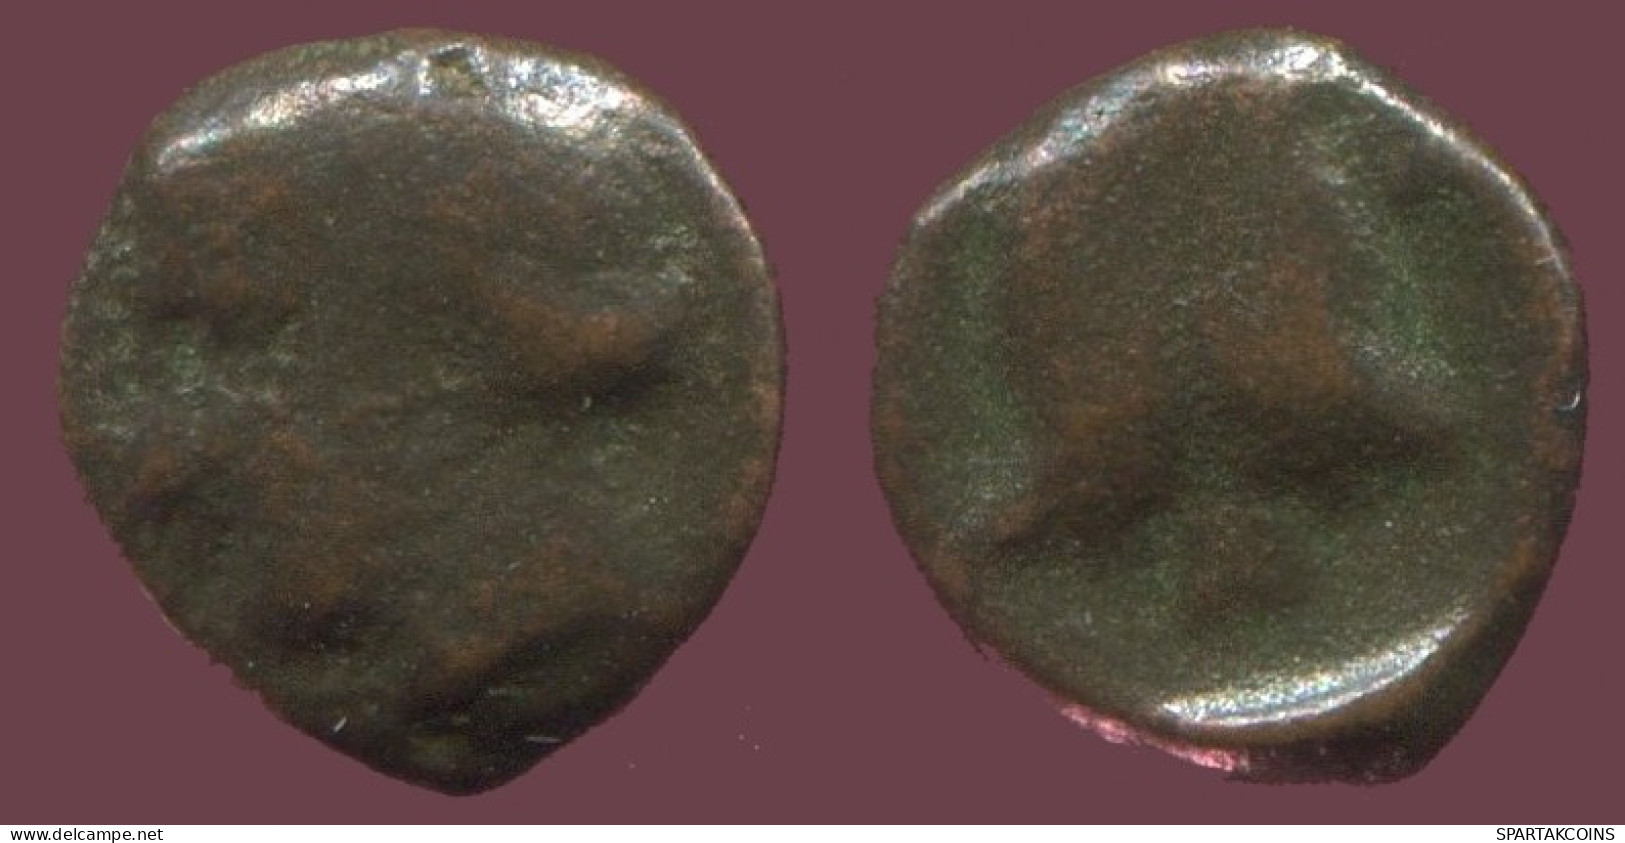 Antiguo Auténtico Original GRIEGO Moneda 0.4g/7mm #ANT1606.9.E.A - Grecques